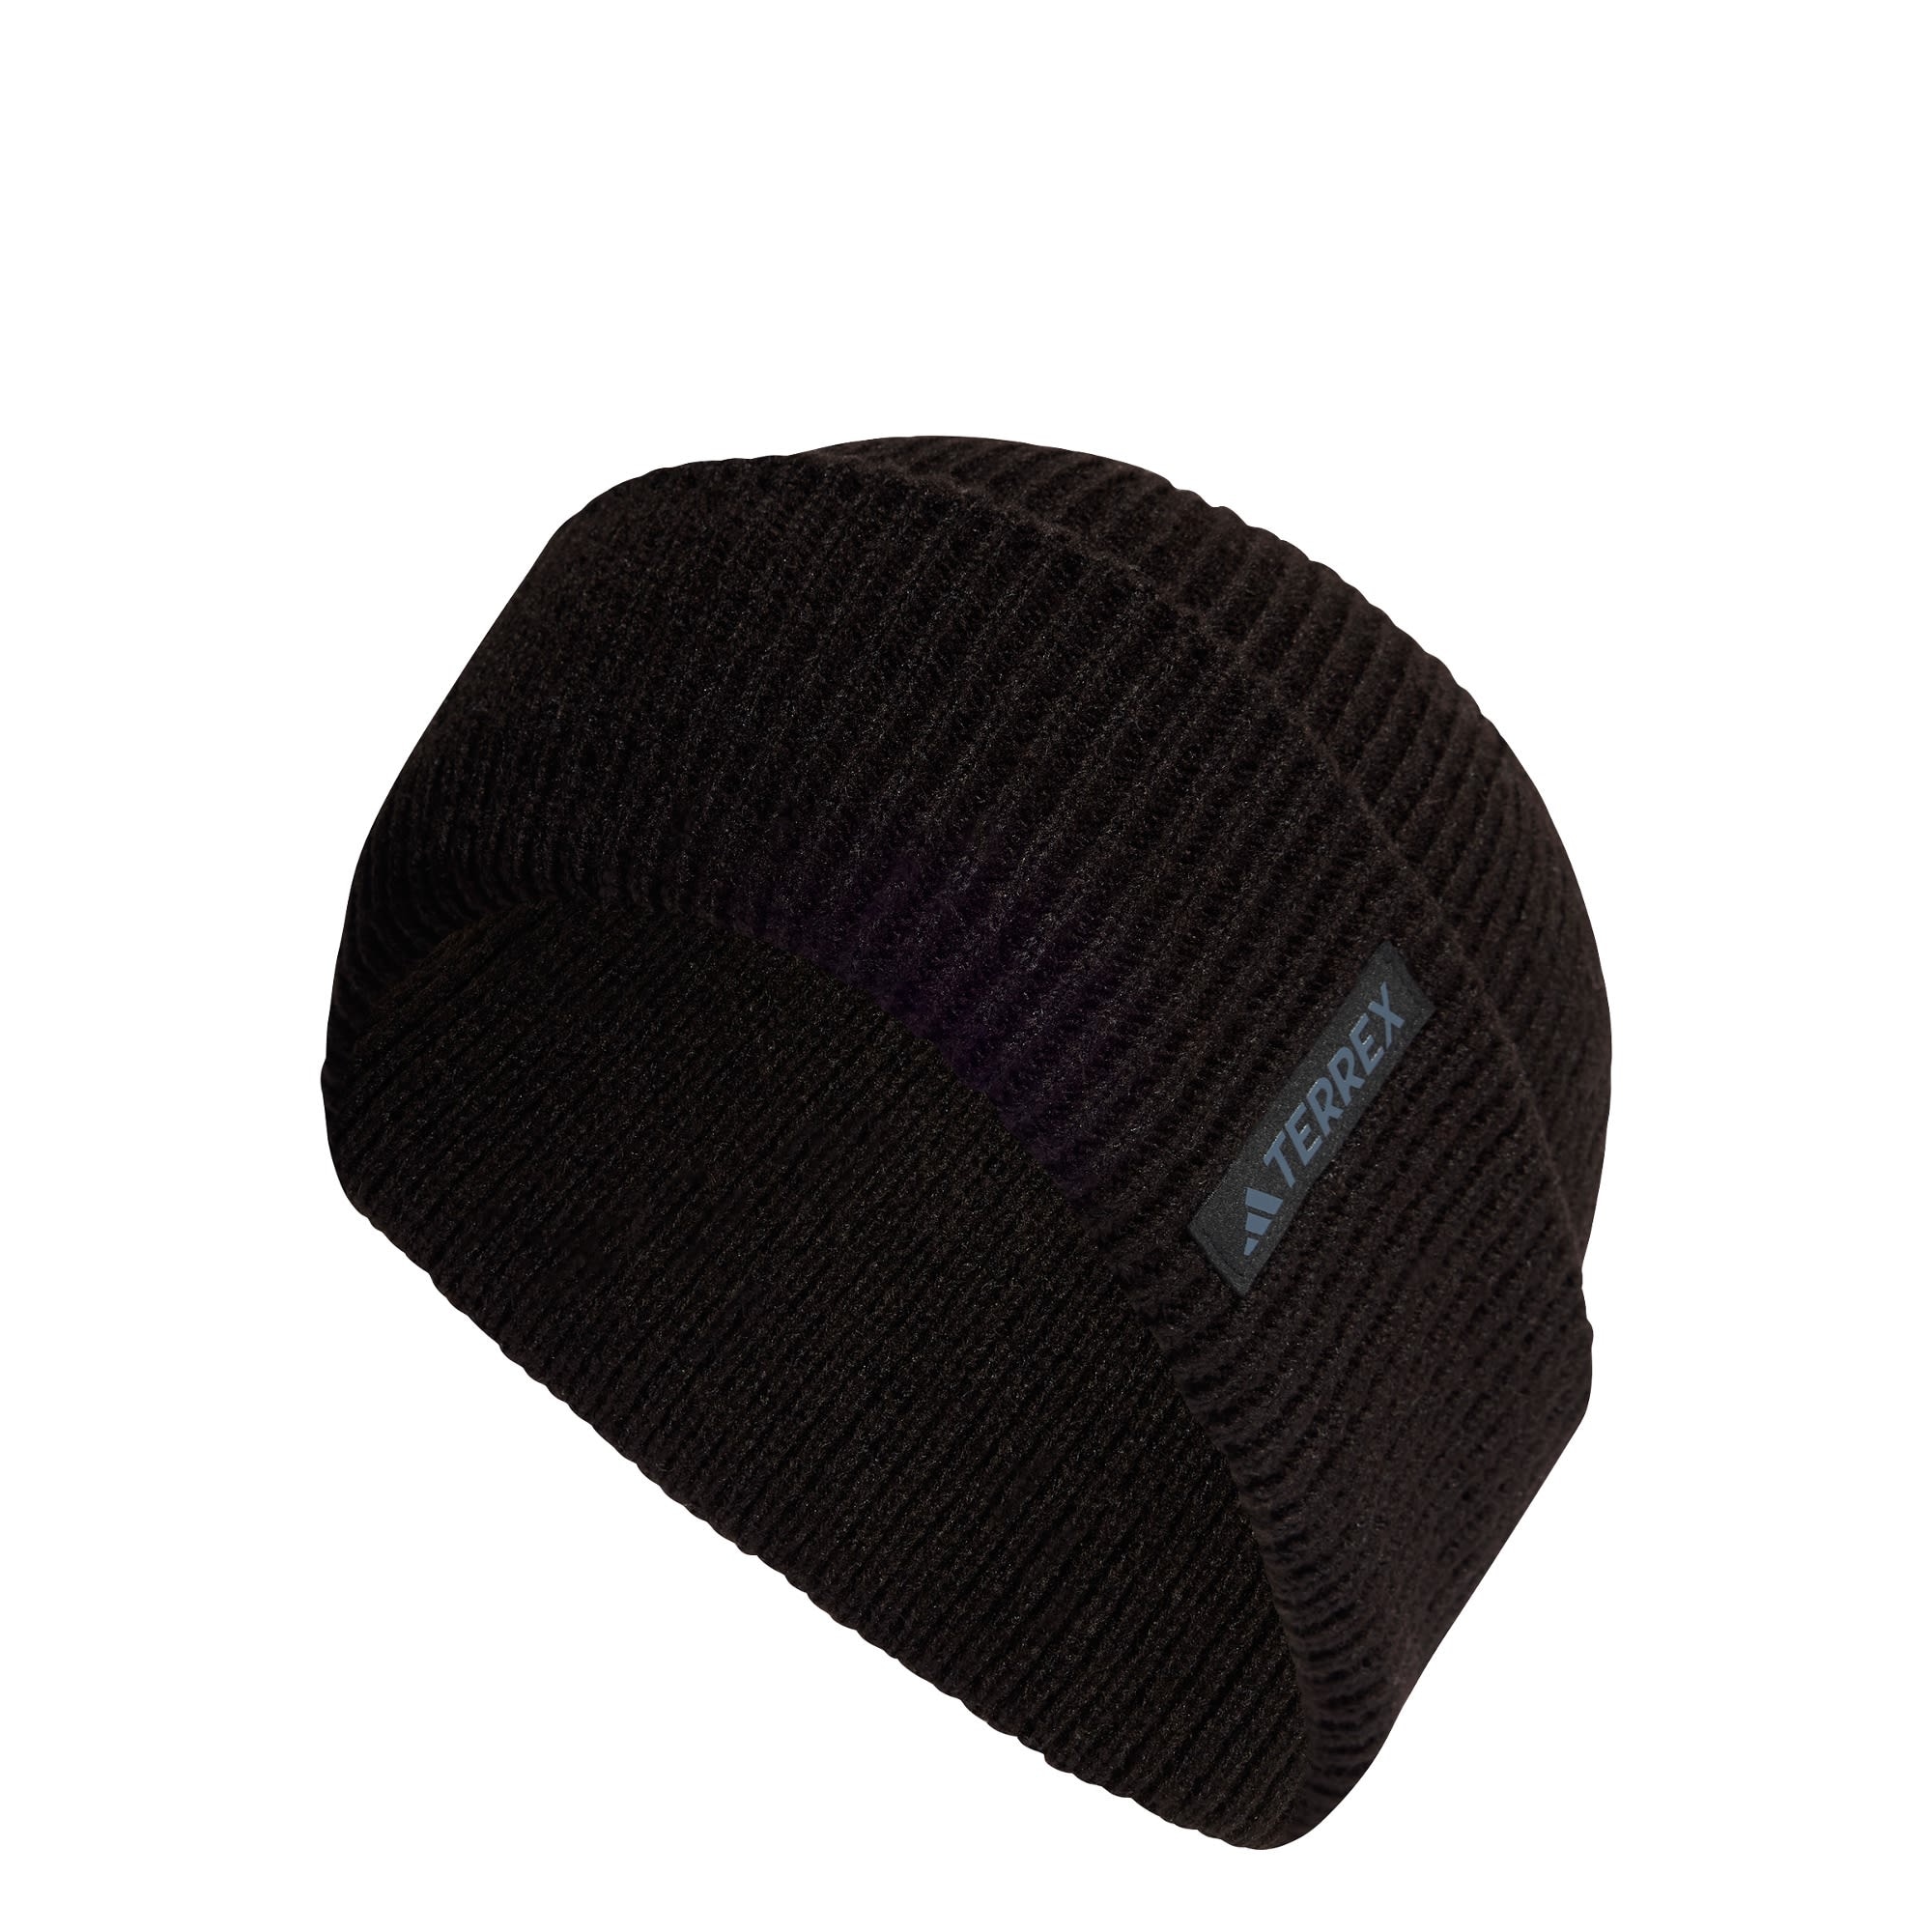 ADIDAS TERREX Sportinė kepurė mėlyna / juoda